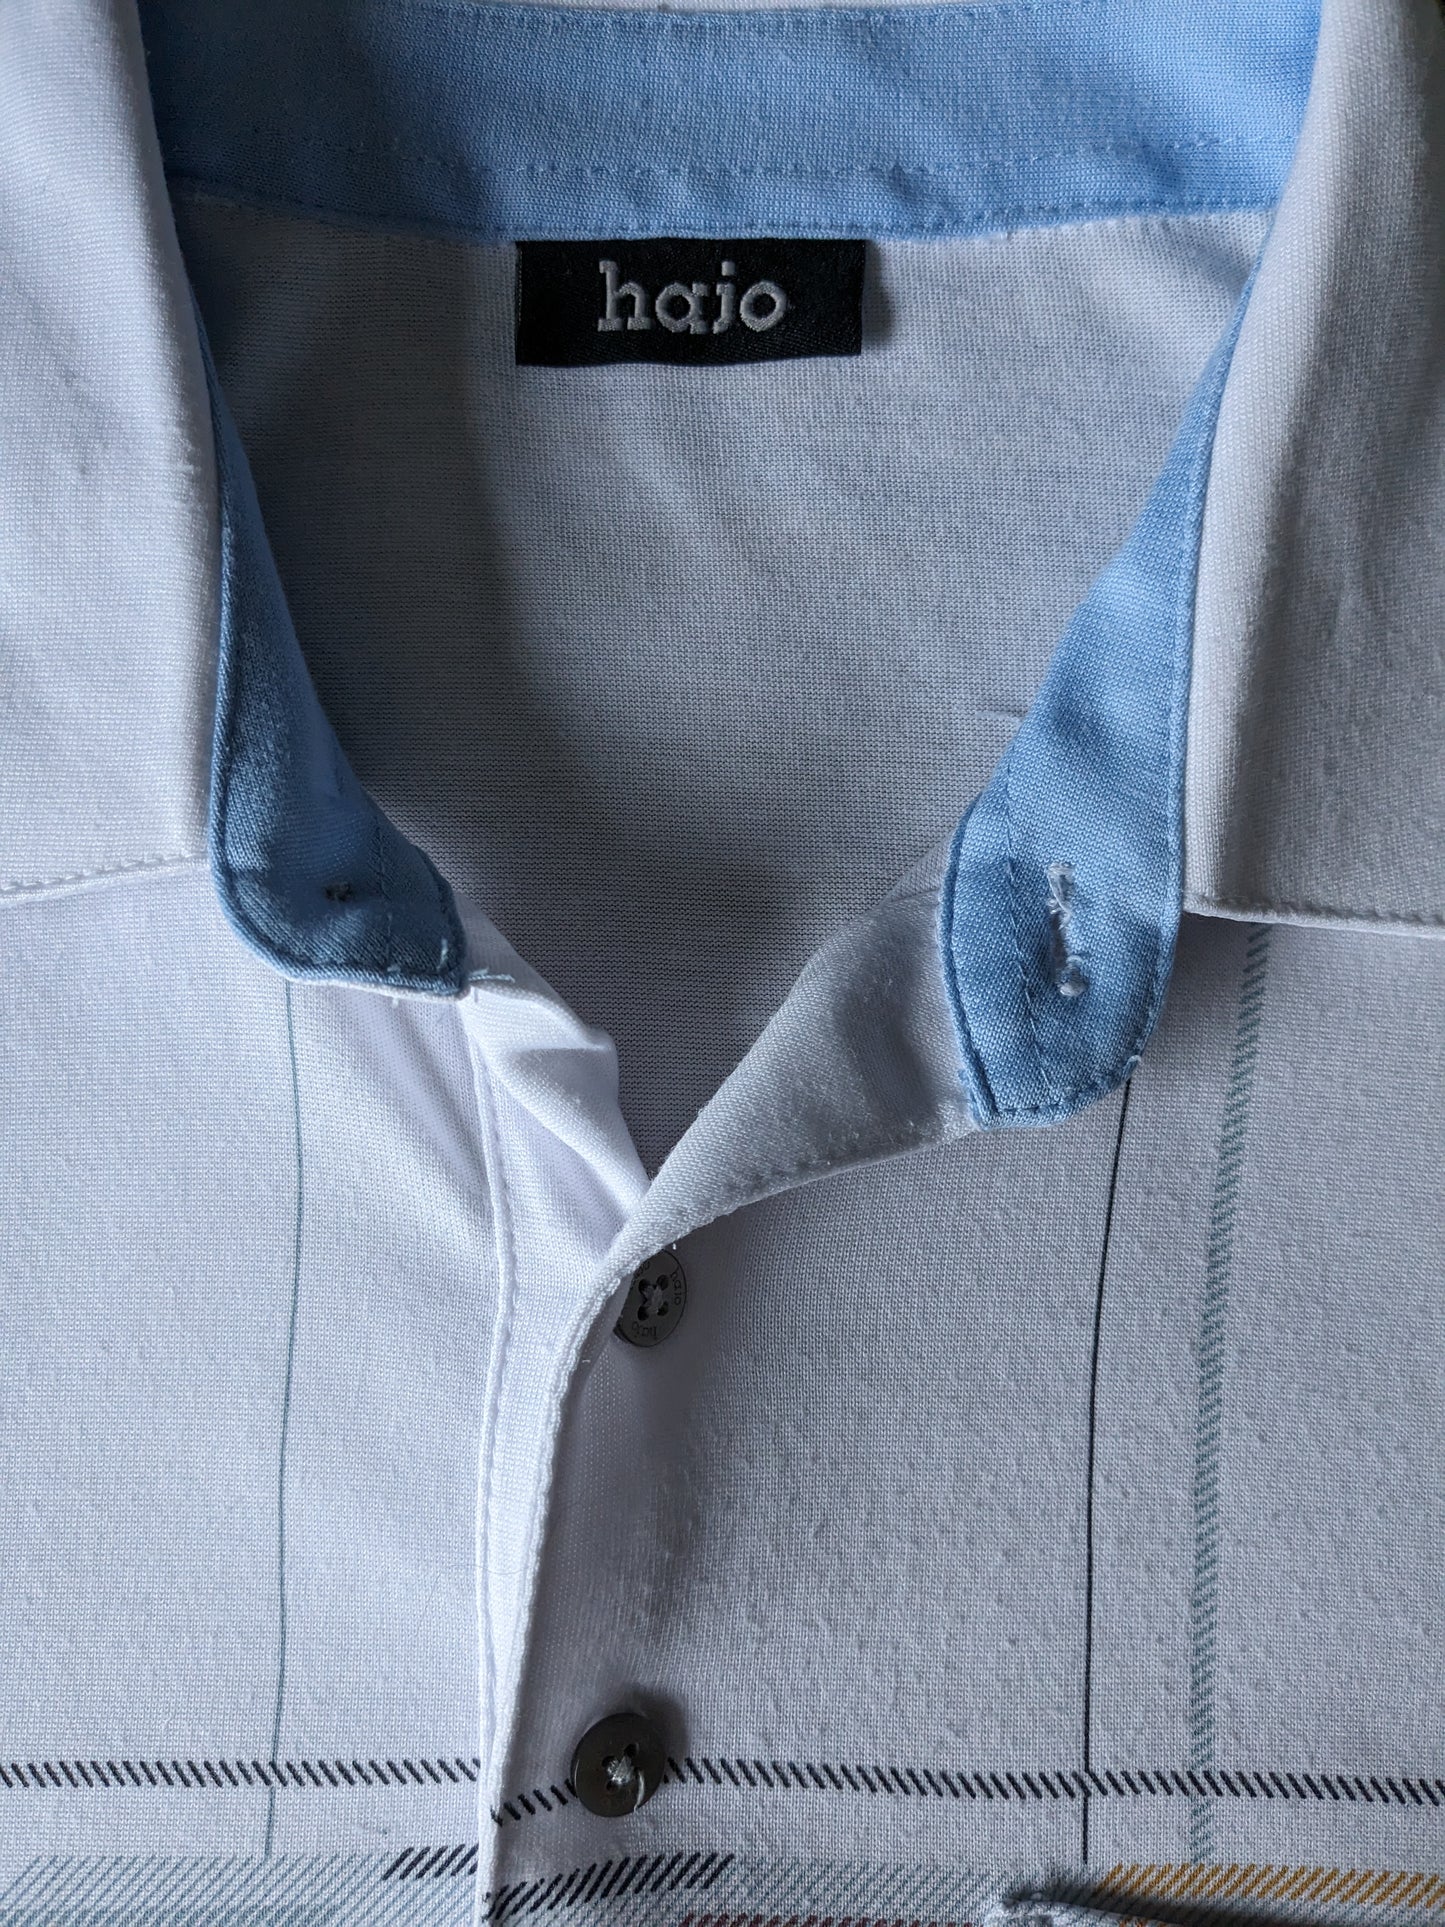 Vintage Hajo Polo con banda elástica. Blanco con impresión. Tamaño L / XL.